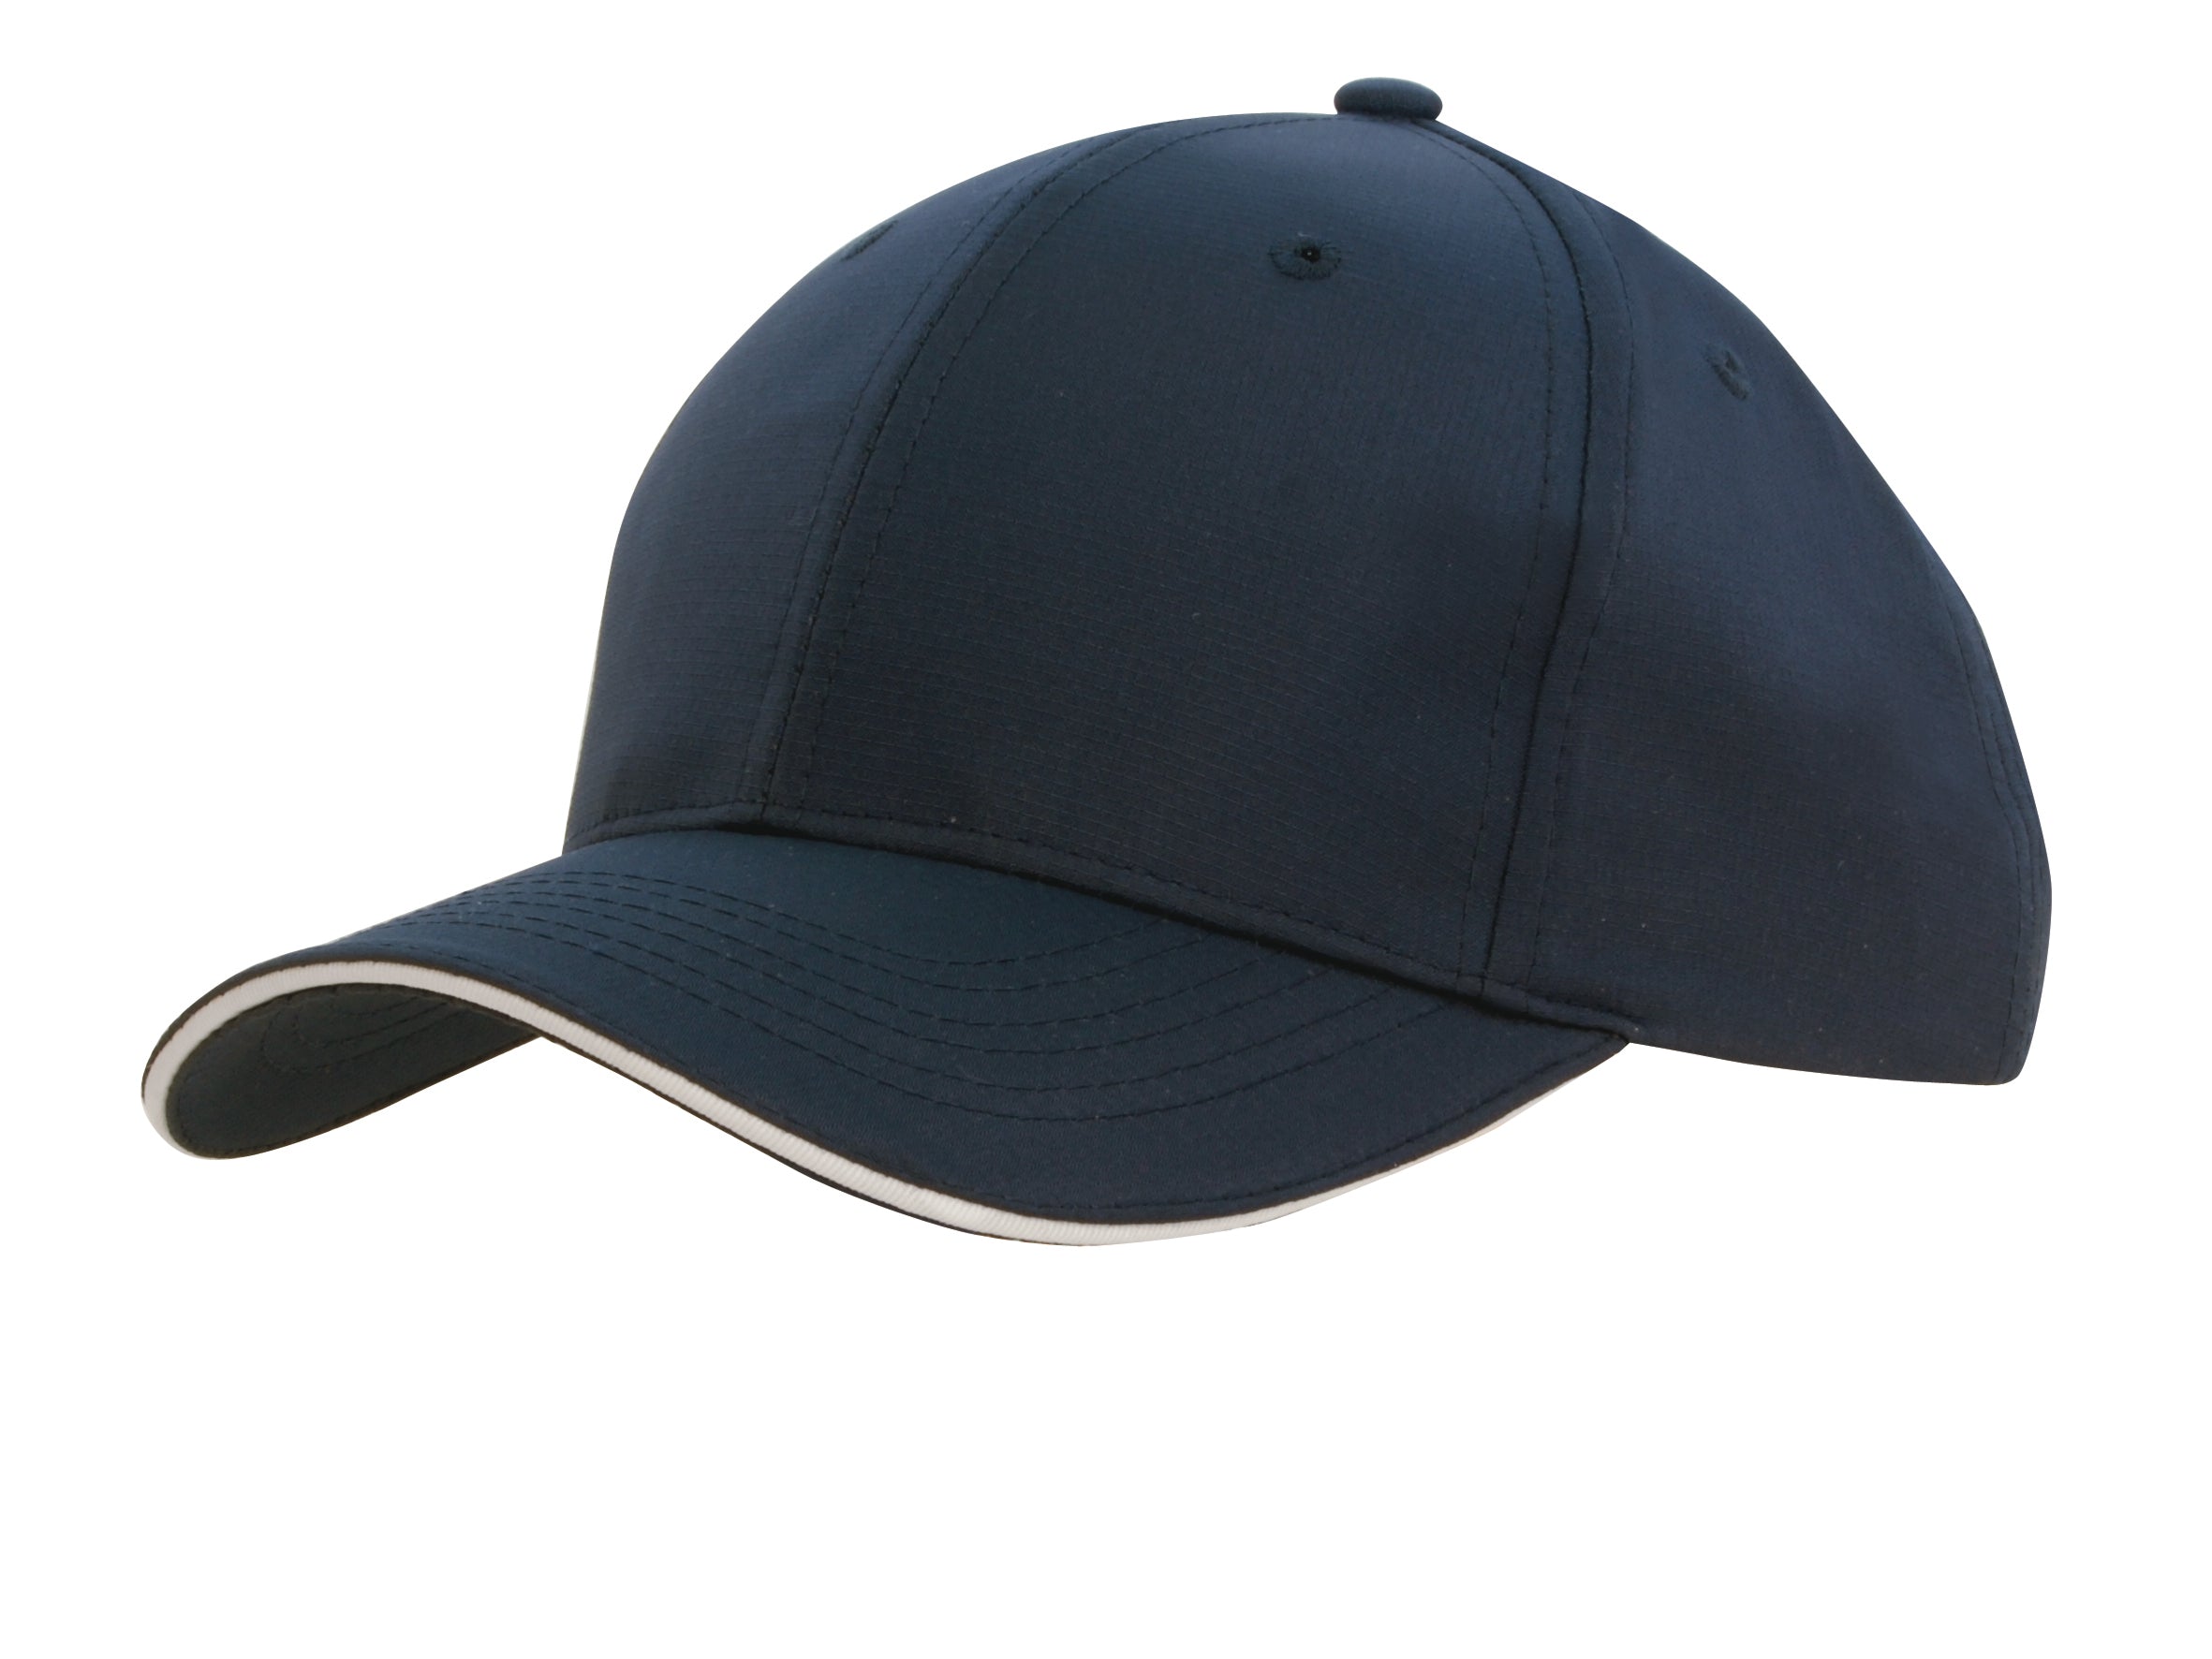 Headwear Sports Ripstop W/sandwich X12 - 4149 Cap Headwear Professionals Navy/White One Size 